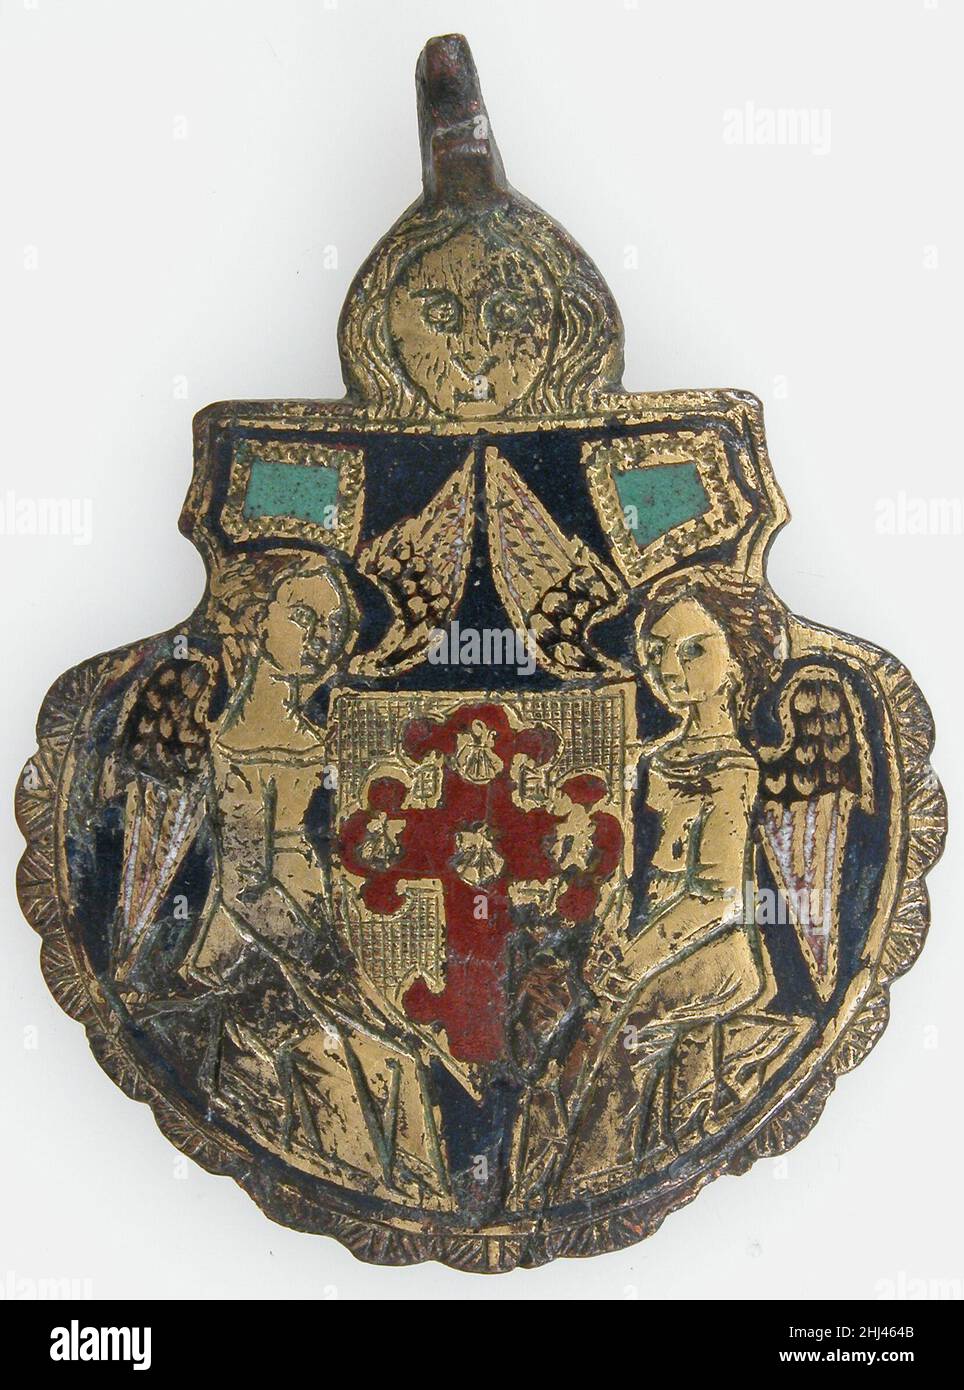 Harness Pendant 13th–Anfang des 15th. Jahrhunderts die möglicherweise  spanische Heraldik oder Wappen waren im Mittelalter und in der Renaissance  von entscheidender Bedeutung in Europa. Heraldische Embleme wurden  verwendet, um Adelsfamilien, Städte ...